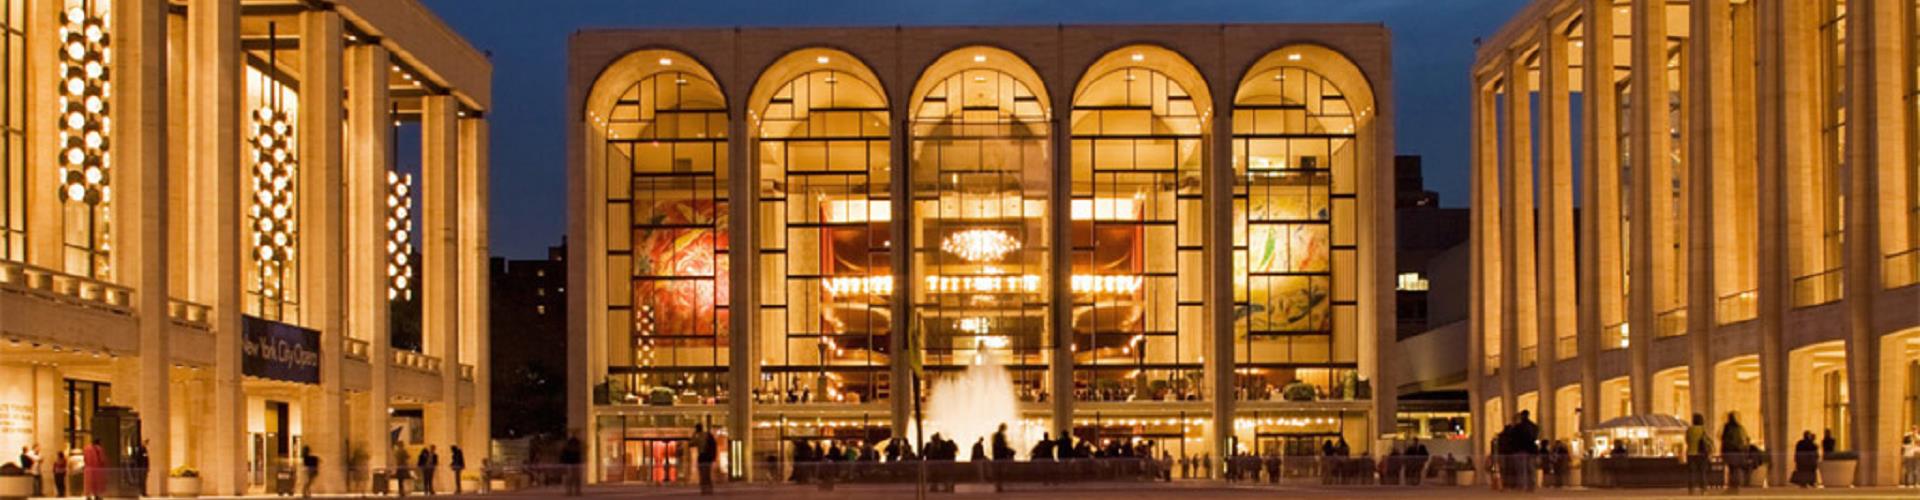 美国纽约大都会歌剧院